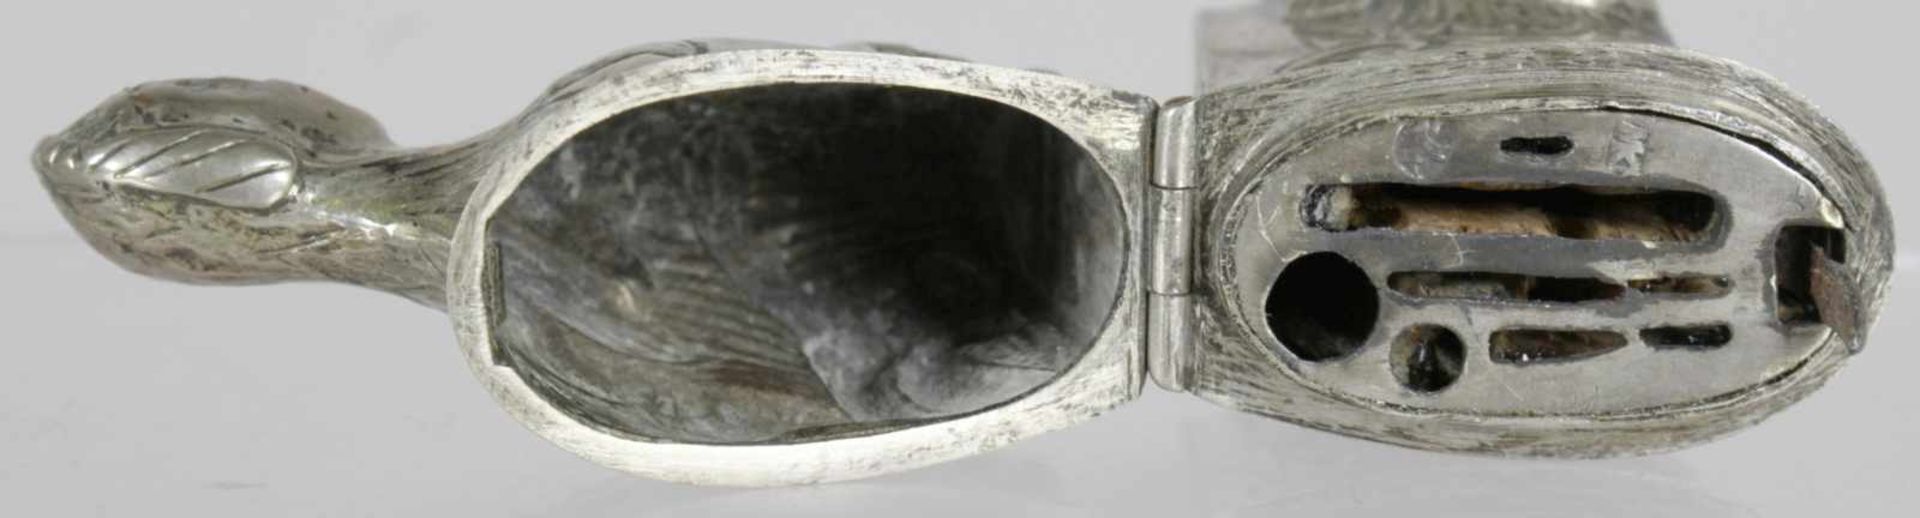 Nadelbüchse, Schwäbisch Gmünd, 18. Jh., Silber, Meister: wohl Johann Michael Knoll,erwähnt 1771 - Bild 3 aus 6